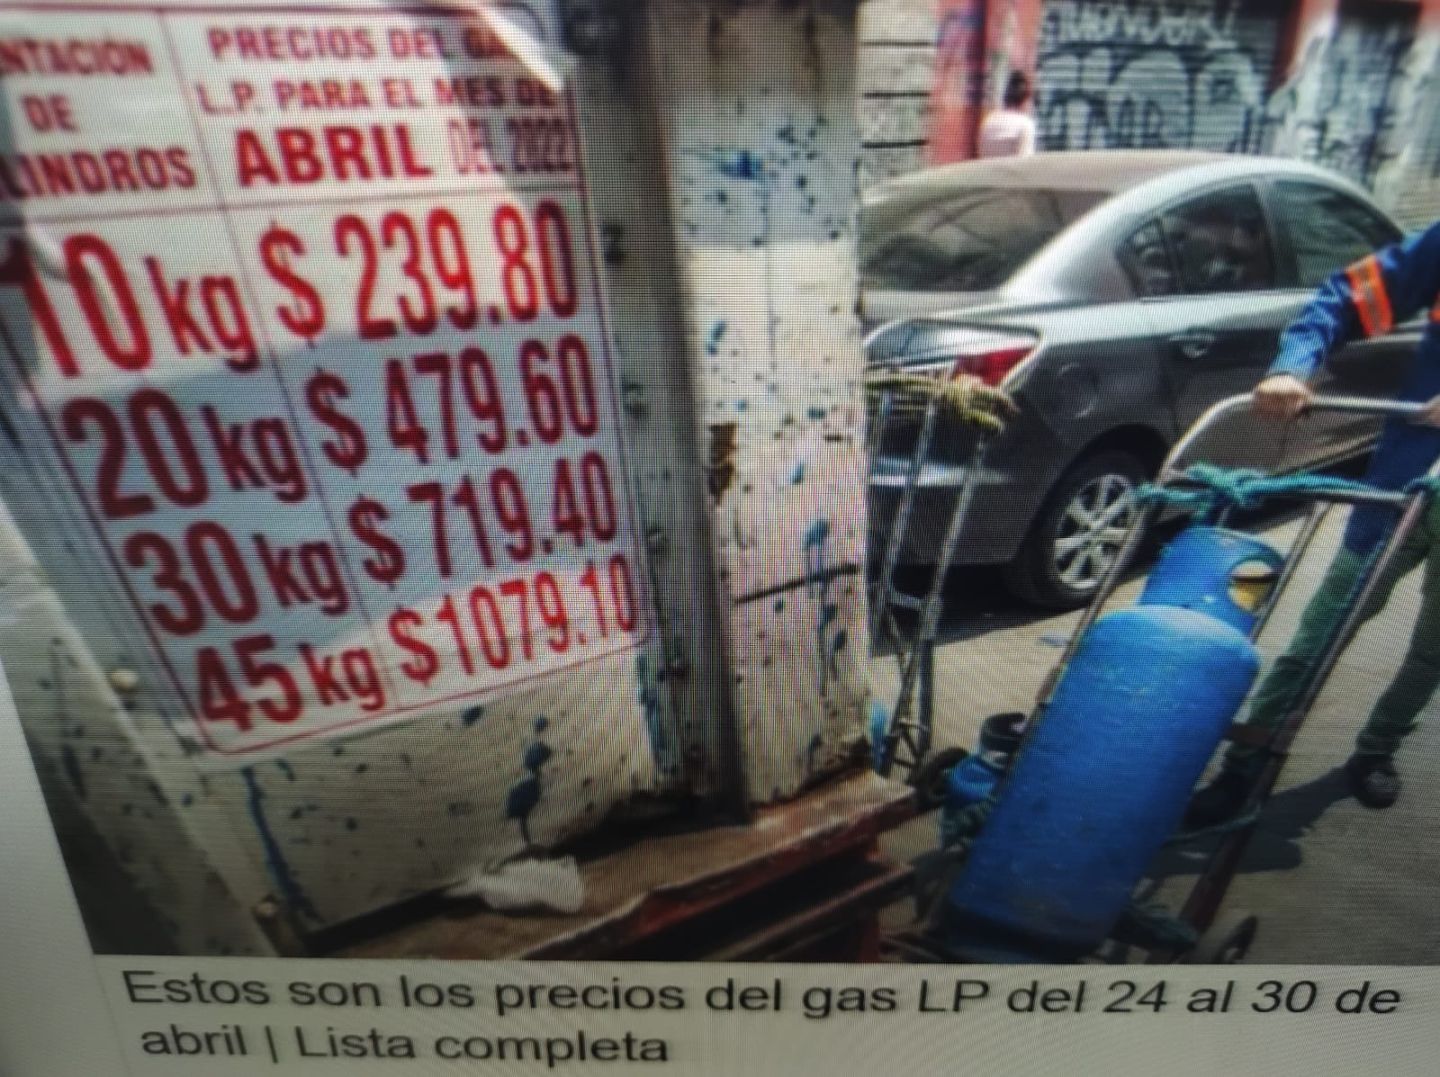 #Estos son los precios del gas LP del 24 al 30 de abril